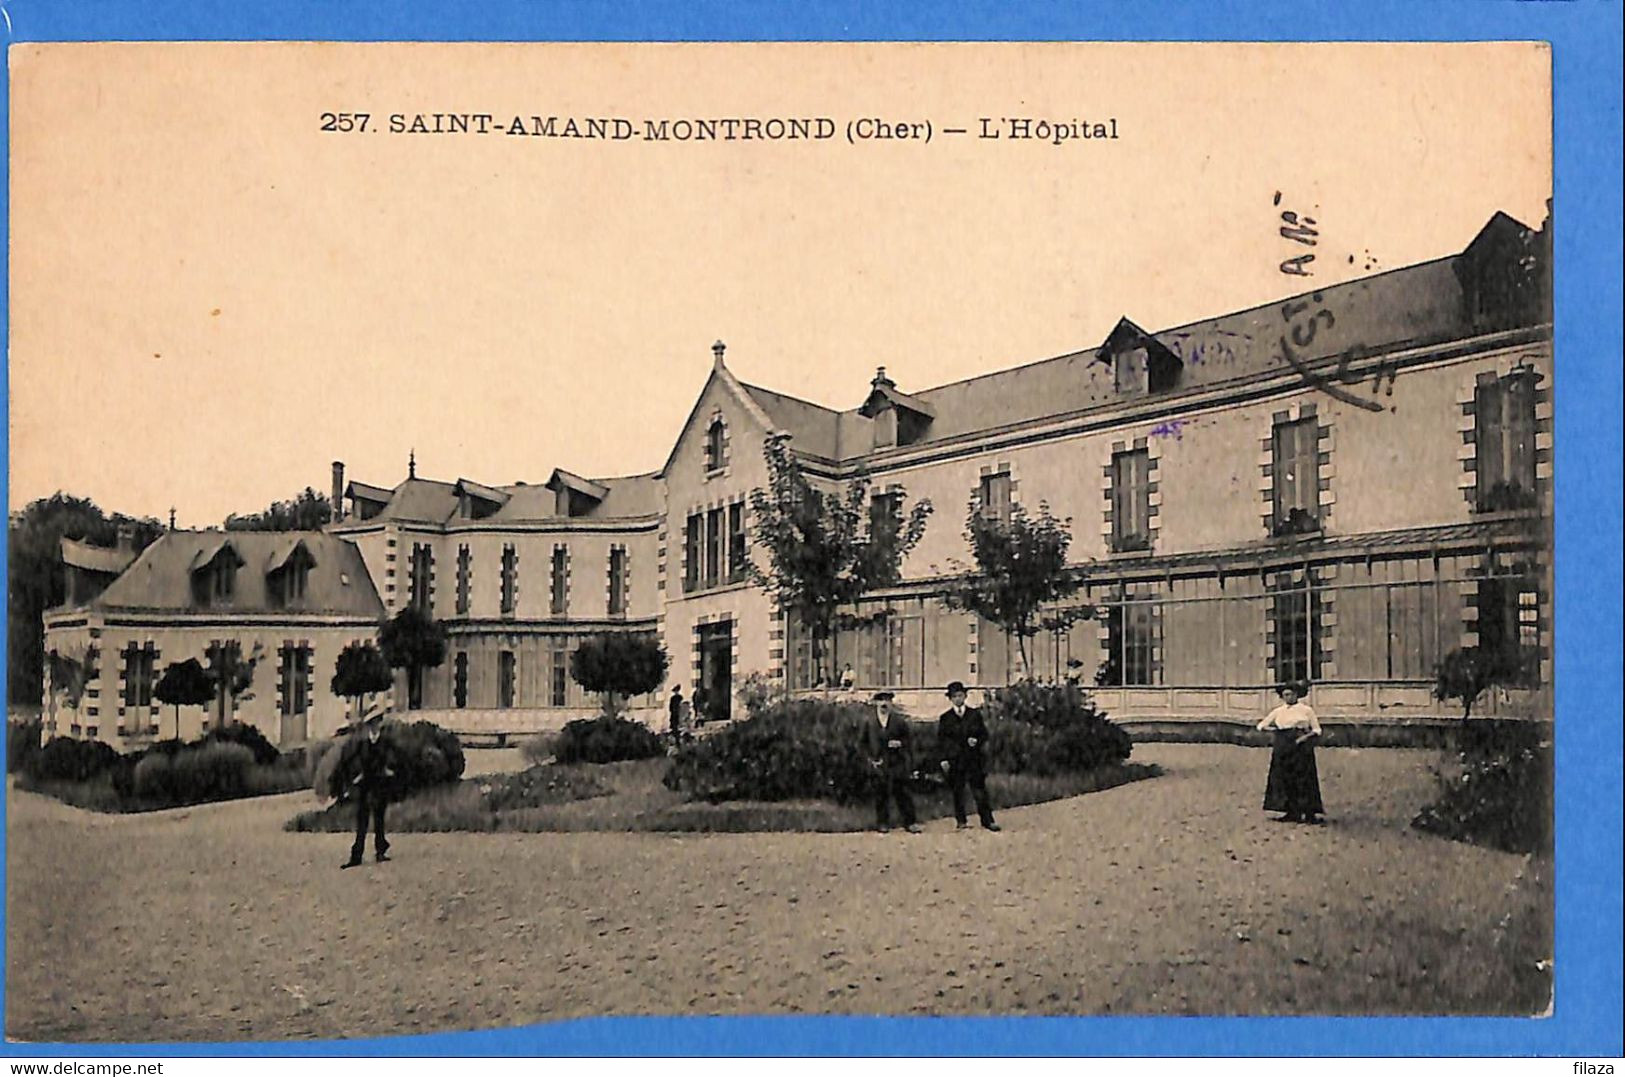 18 - Cher - Saint-Amand-Montrond - L'Hospital (N7869) - Saint-Amand-Montrond